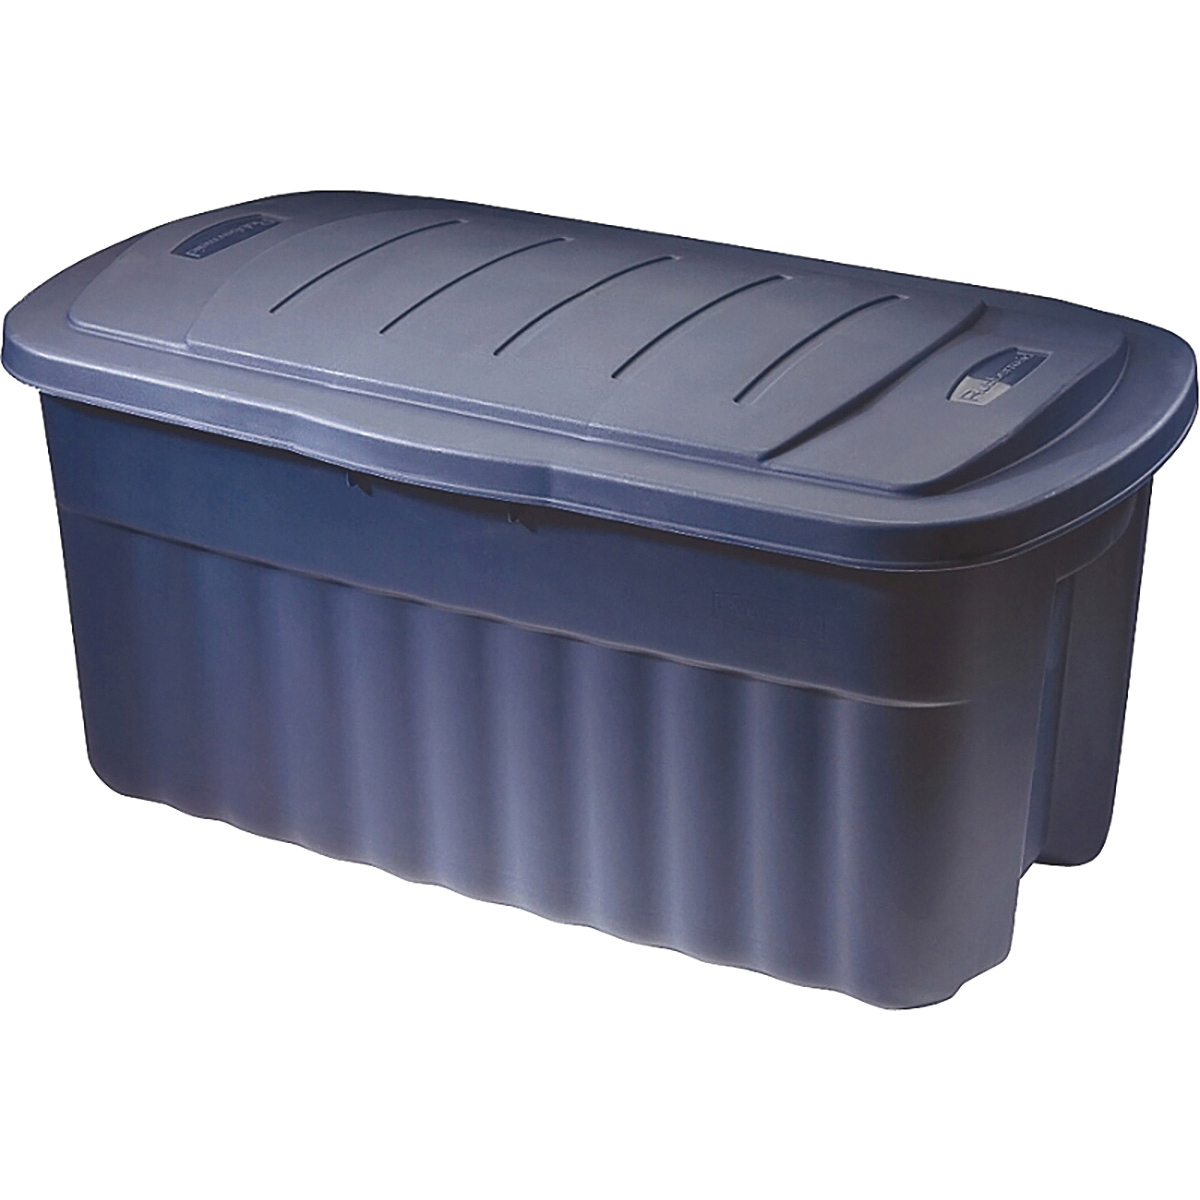 RMRT400001 Storage Container, Polyethylene, Dark Indigo, 36.9 in L, 21.3 in W, 18.3 in H